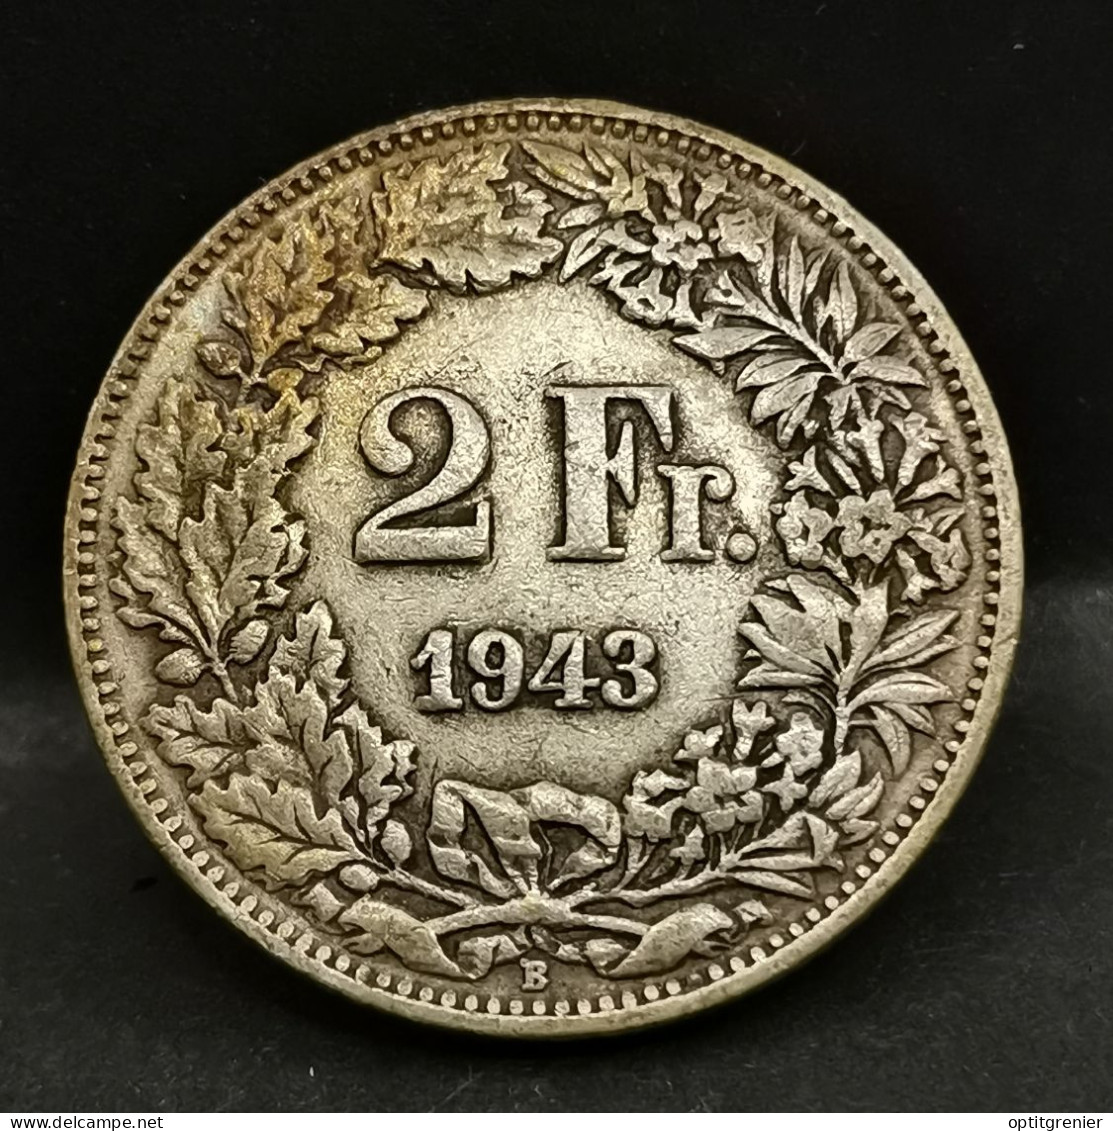 2 FRANCS ARGENT 1943 B BERNE HELVETIA DEBOUT SUISSE / SWITZERLAND SILVER - 1 Franc